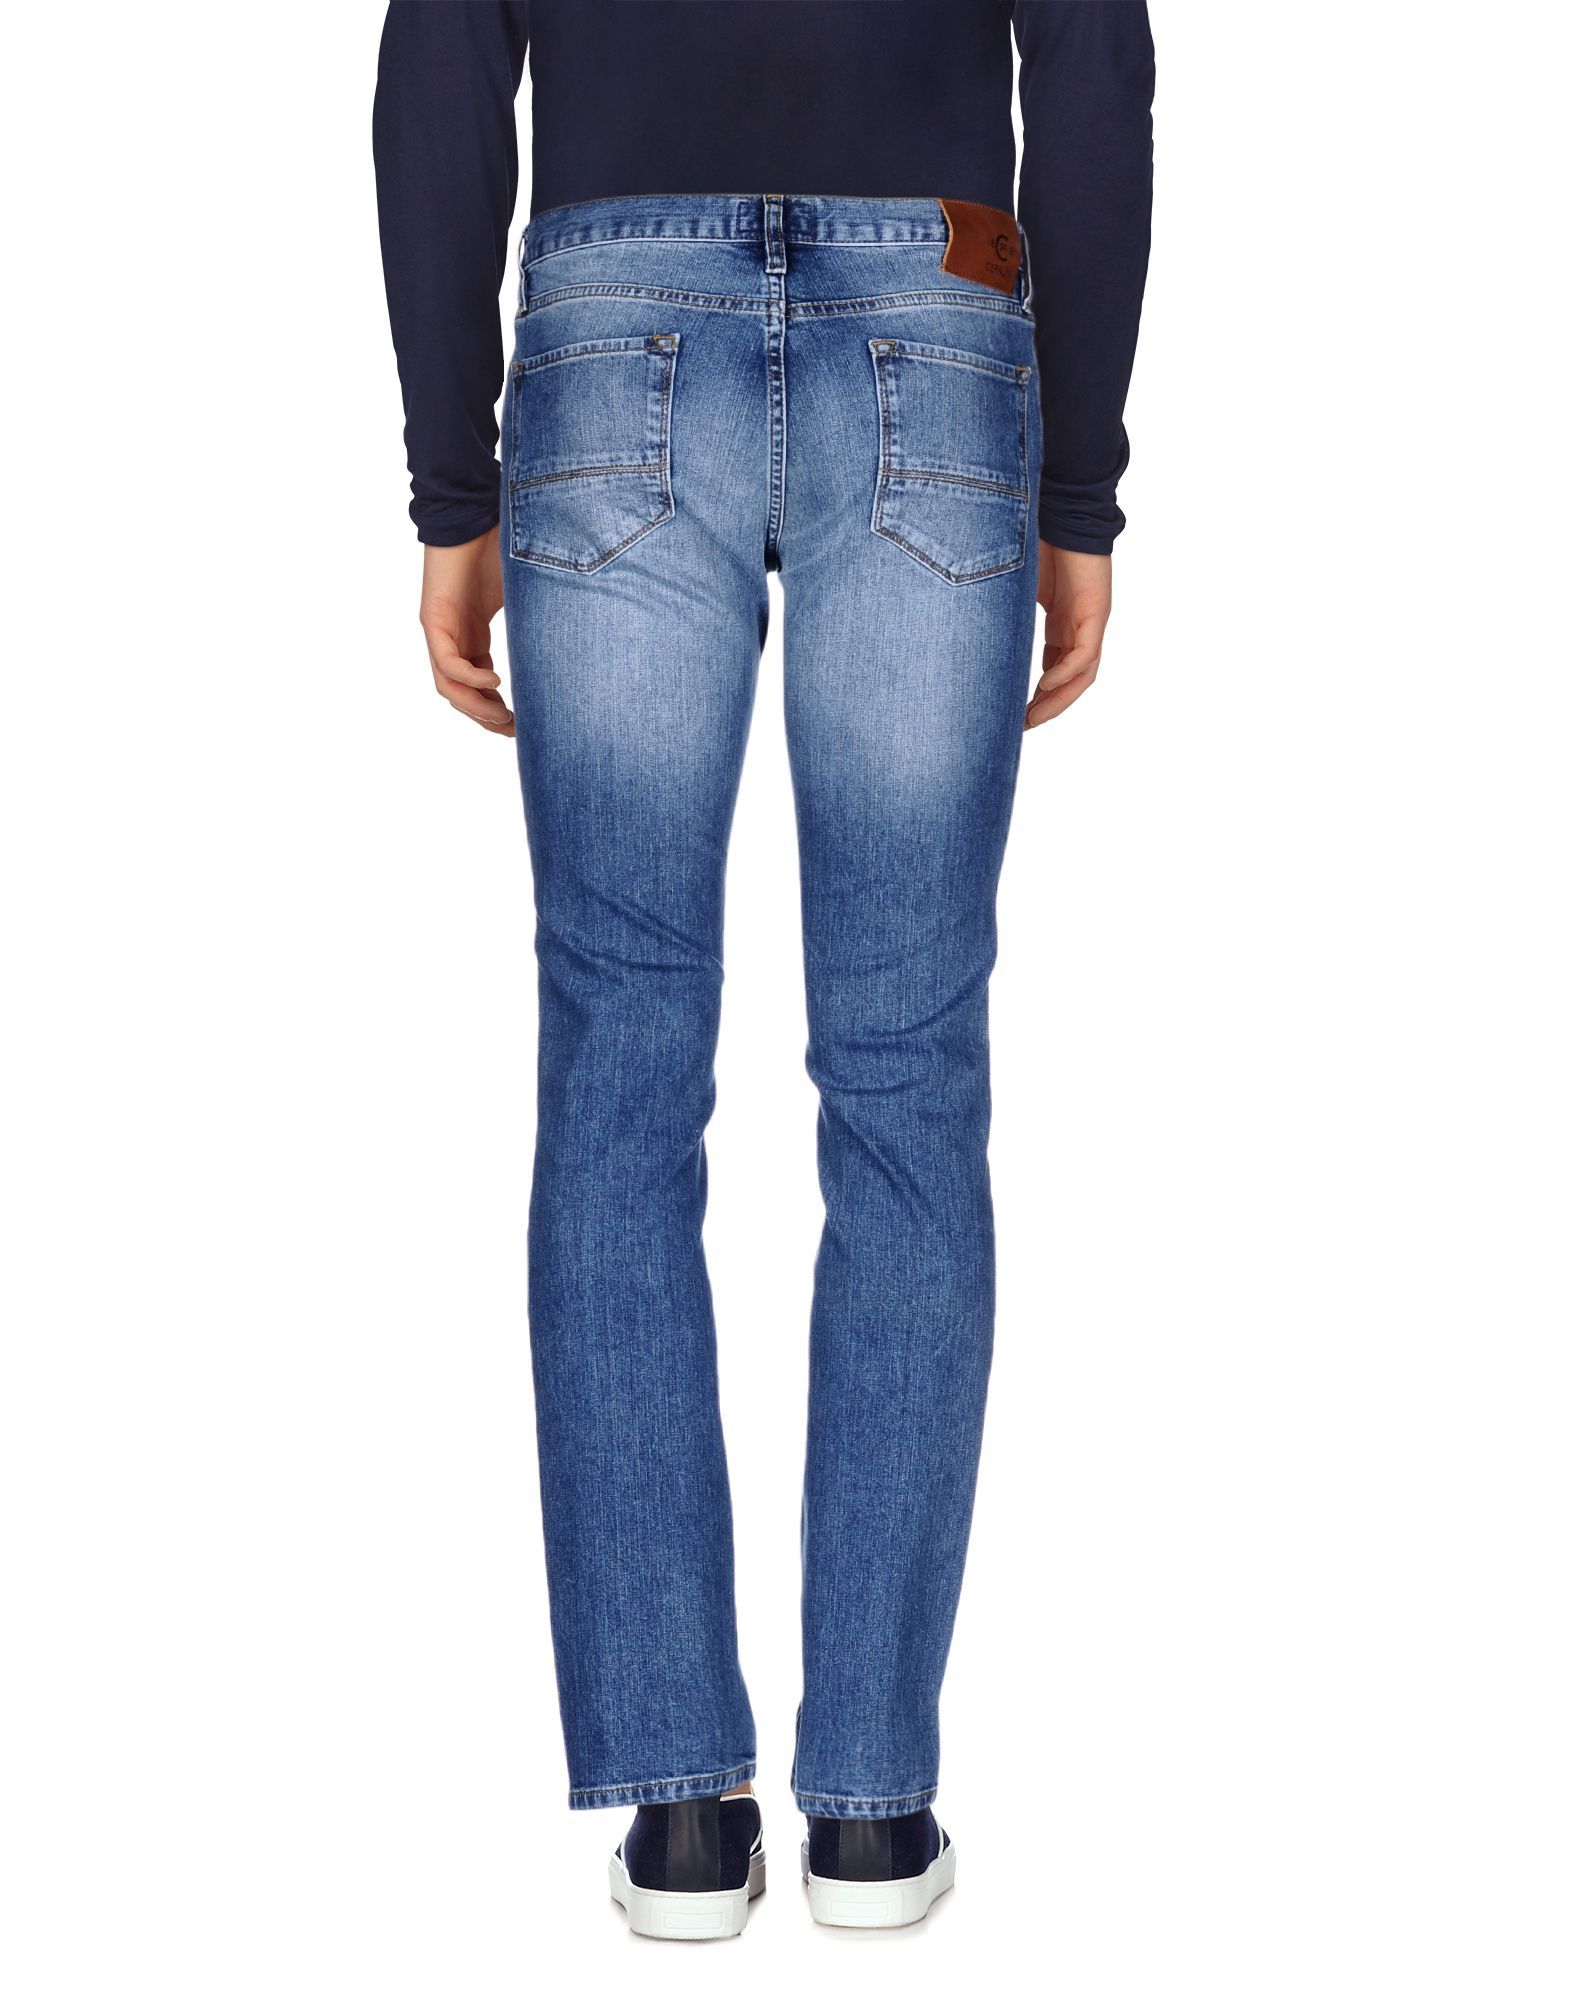 Cerruti 1881 Blue Cotton Slim Fit Jeans